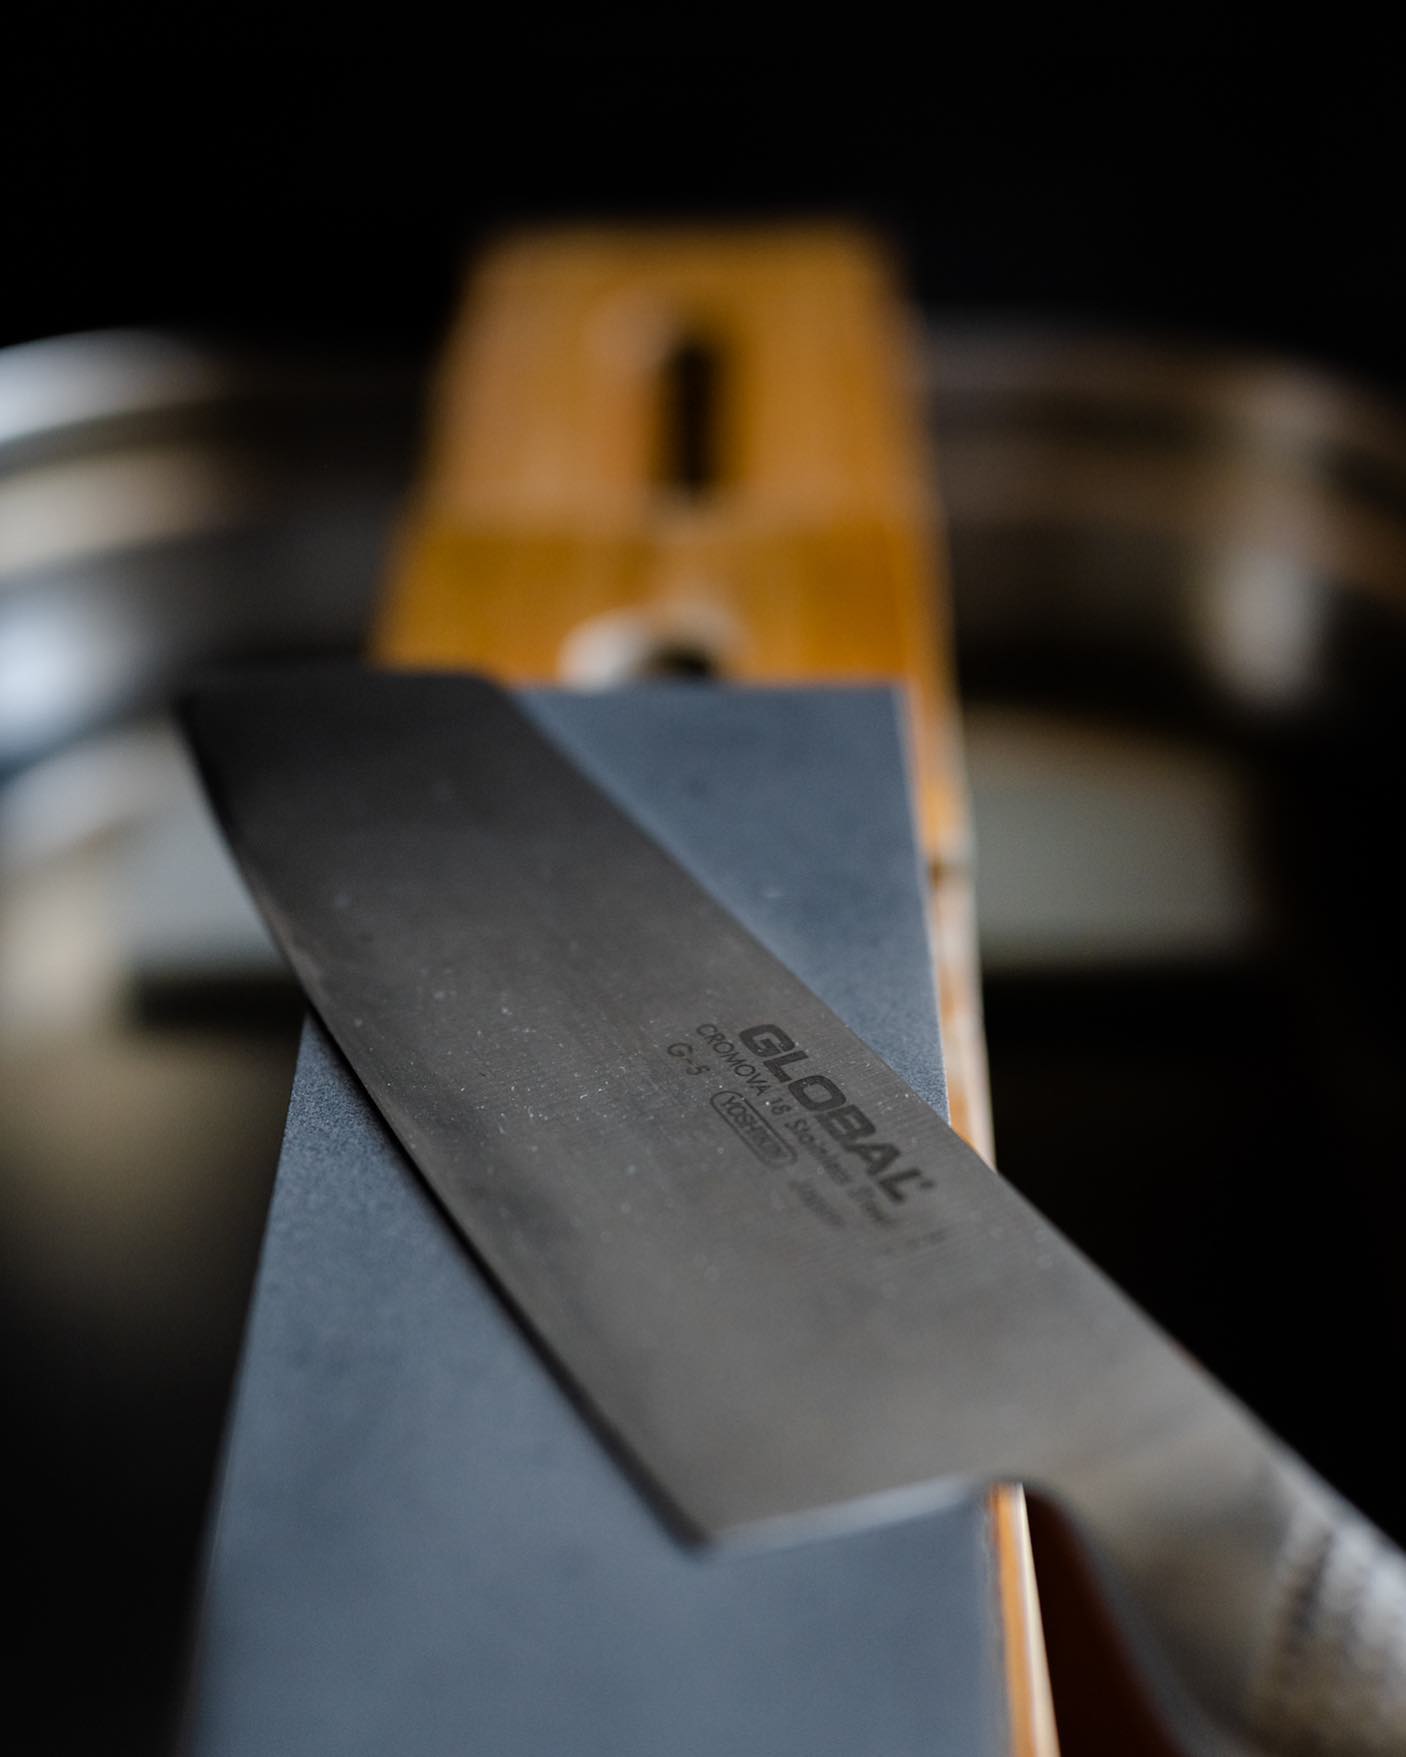 Seguimos con los afilados!!!
No olvides agendar tu hora y tener tus cuchillos listos para estas fiestas🎄

.
.
.
#teloafilo #afilado #cuchillo #piedra #filo #cocina #cuchillosjaponeses #cocinero #restaurant #chef #santiago #chile #instachile #chilegram #corte #afilador #gastronomia #whetstone #sharpening #knives #edge #sharp #grind